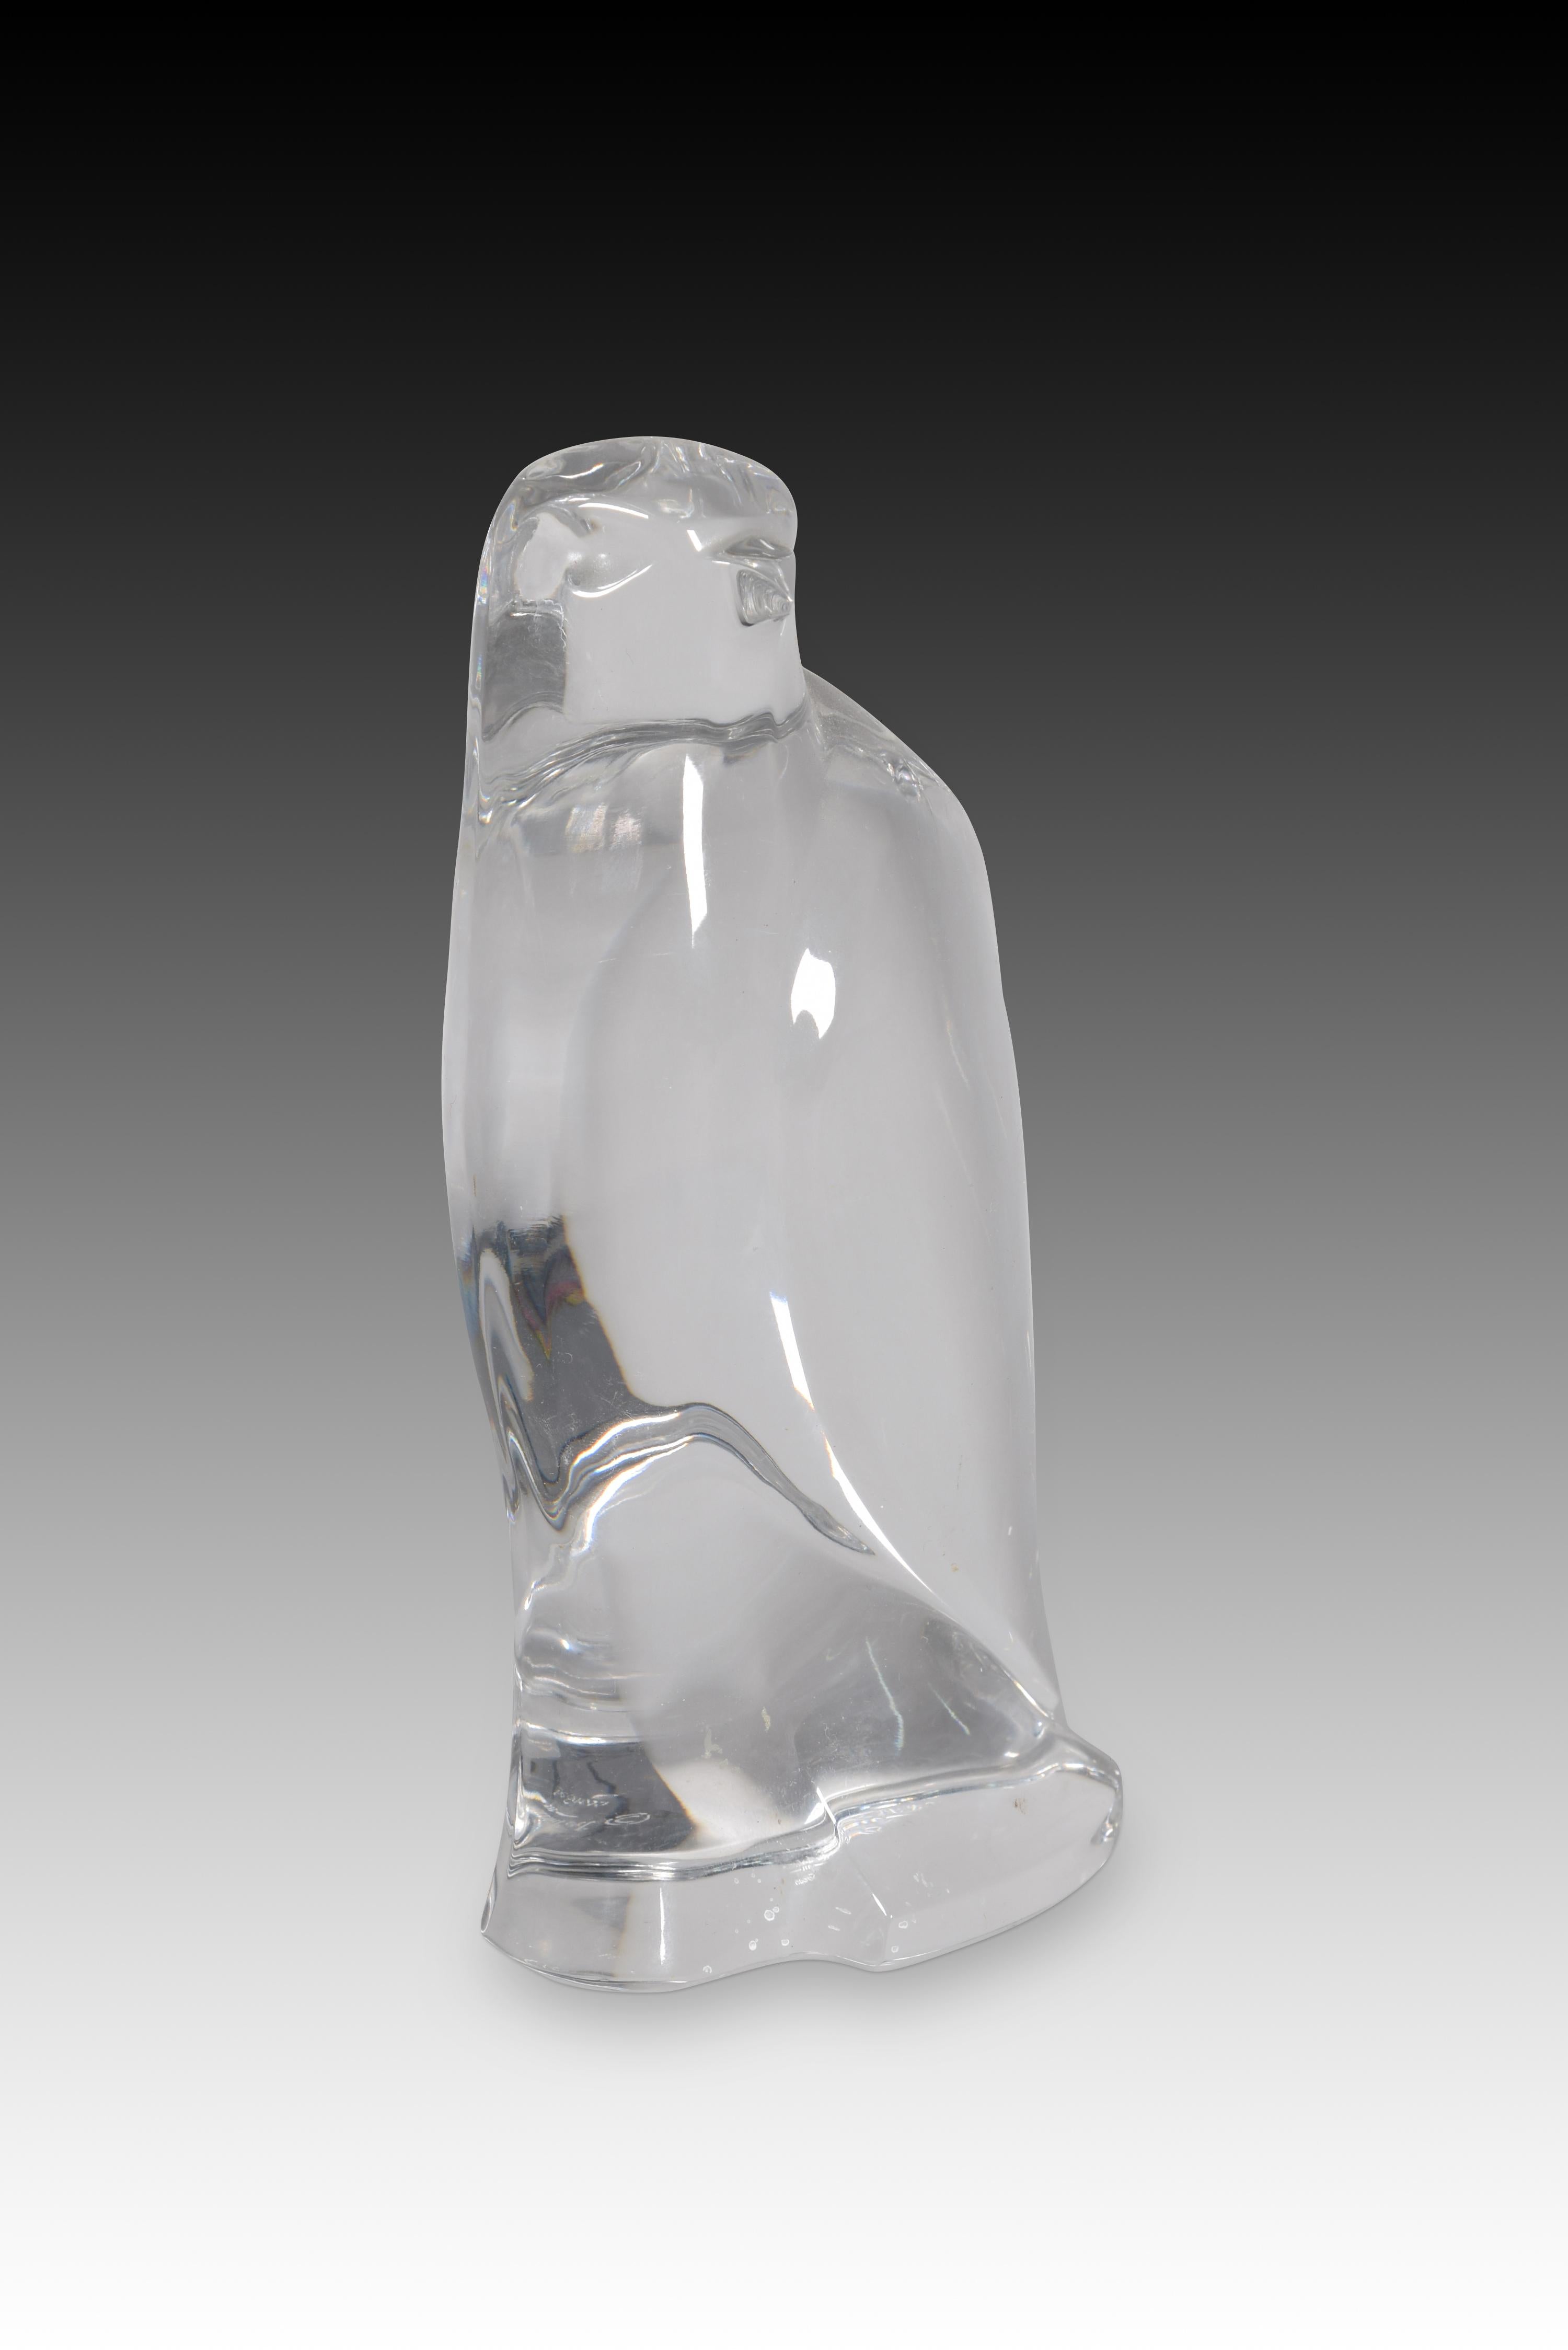 Faucon. Le verre. Natchmann, Allemagne, 20e siècle. 
Figurine de faucon perché, en verre translucide. Nachtmann (FX Nachtmann Bleikristallwerke GmbH) est une verrerie fine encore en activité, fondée en 1834 par Michael Nachtmann à Unterhütte,